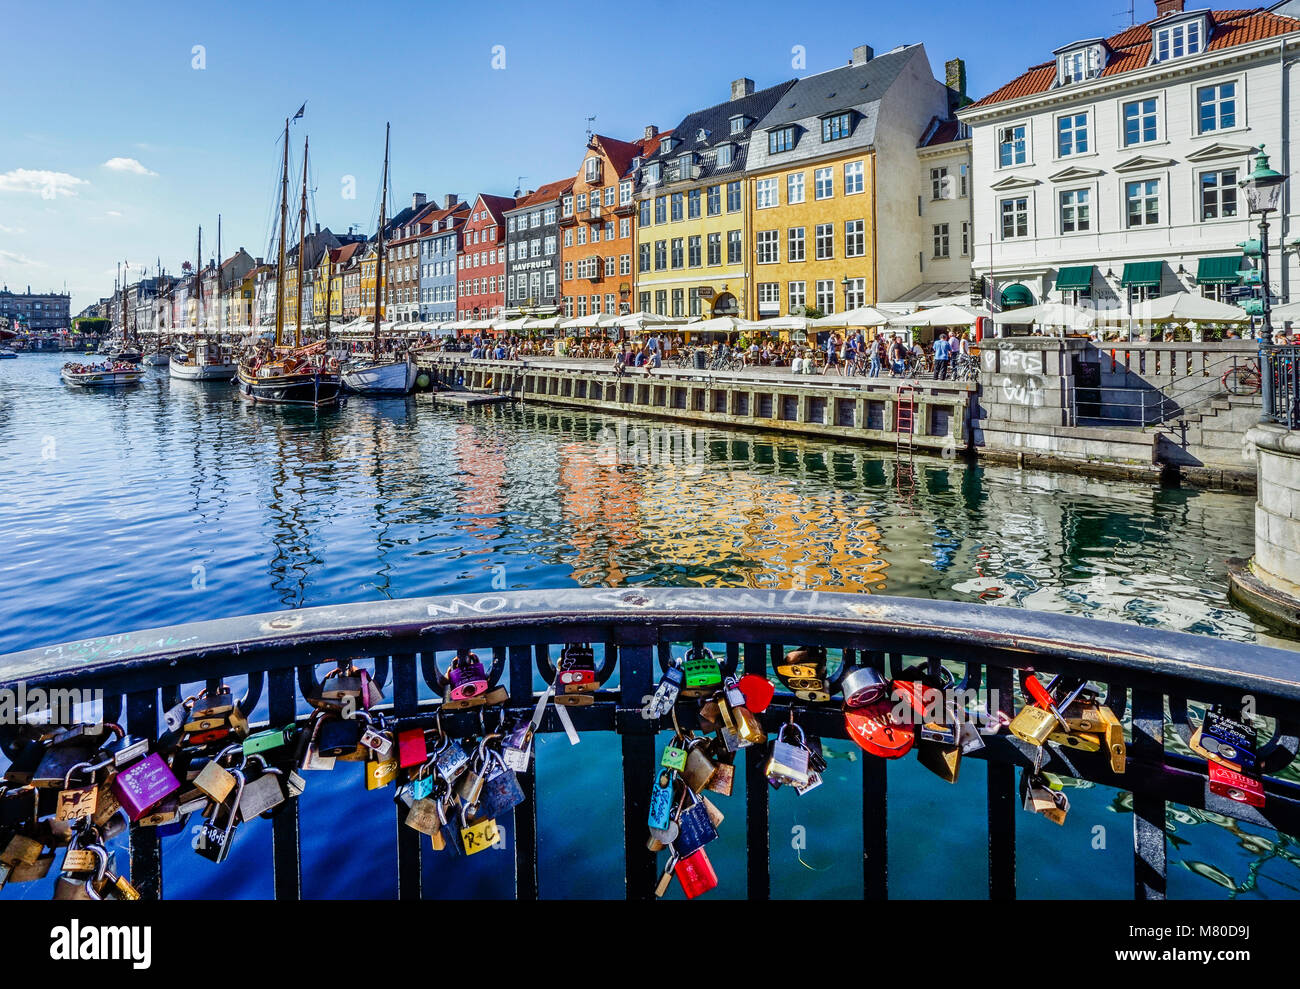 Le Danemark, la Nouvelle-Zélande, Copenhague, love locks sur Nyhavn Pont avec vue sur le front de mer du port canal de Nyhaven, avec des maisons en rangée, res Banque D'Images